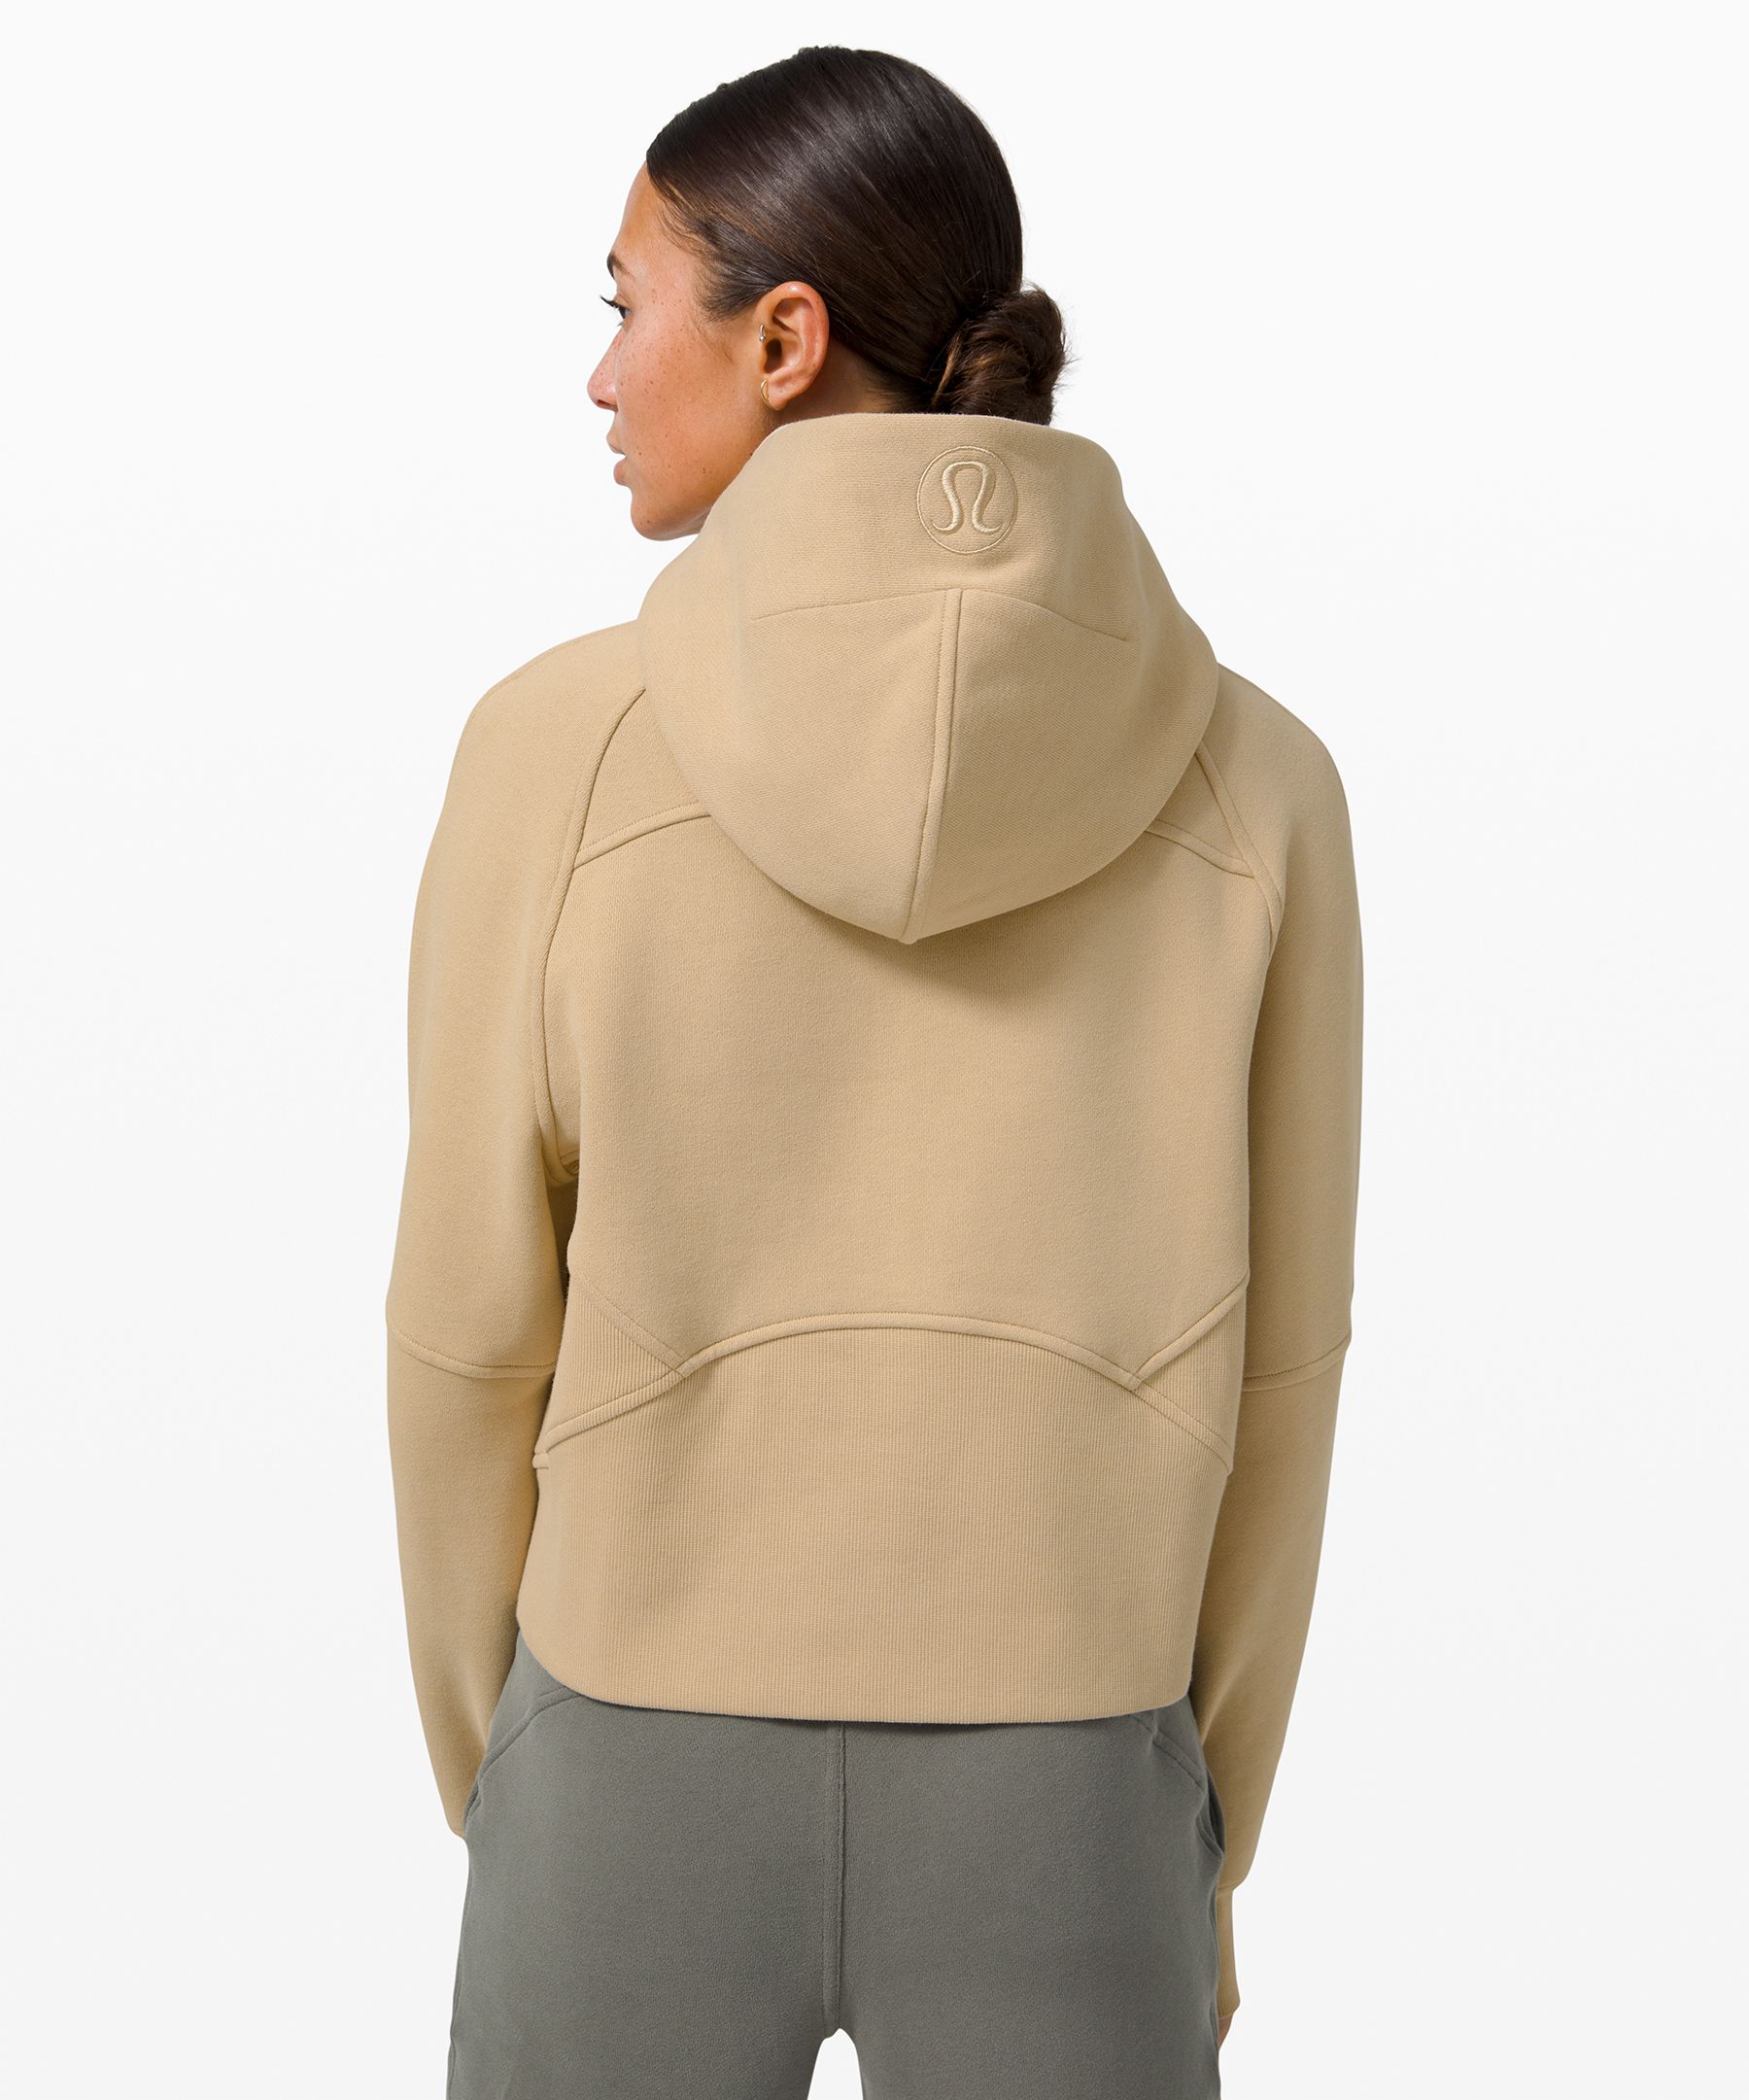 lululemon hoodie